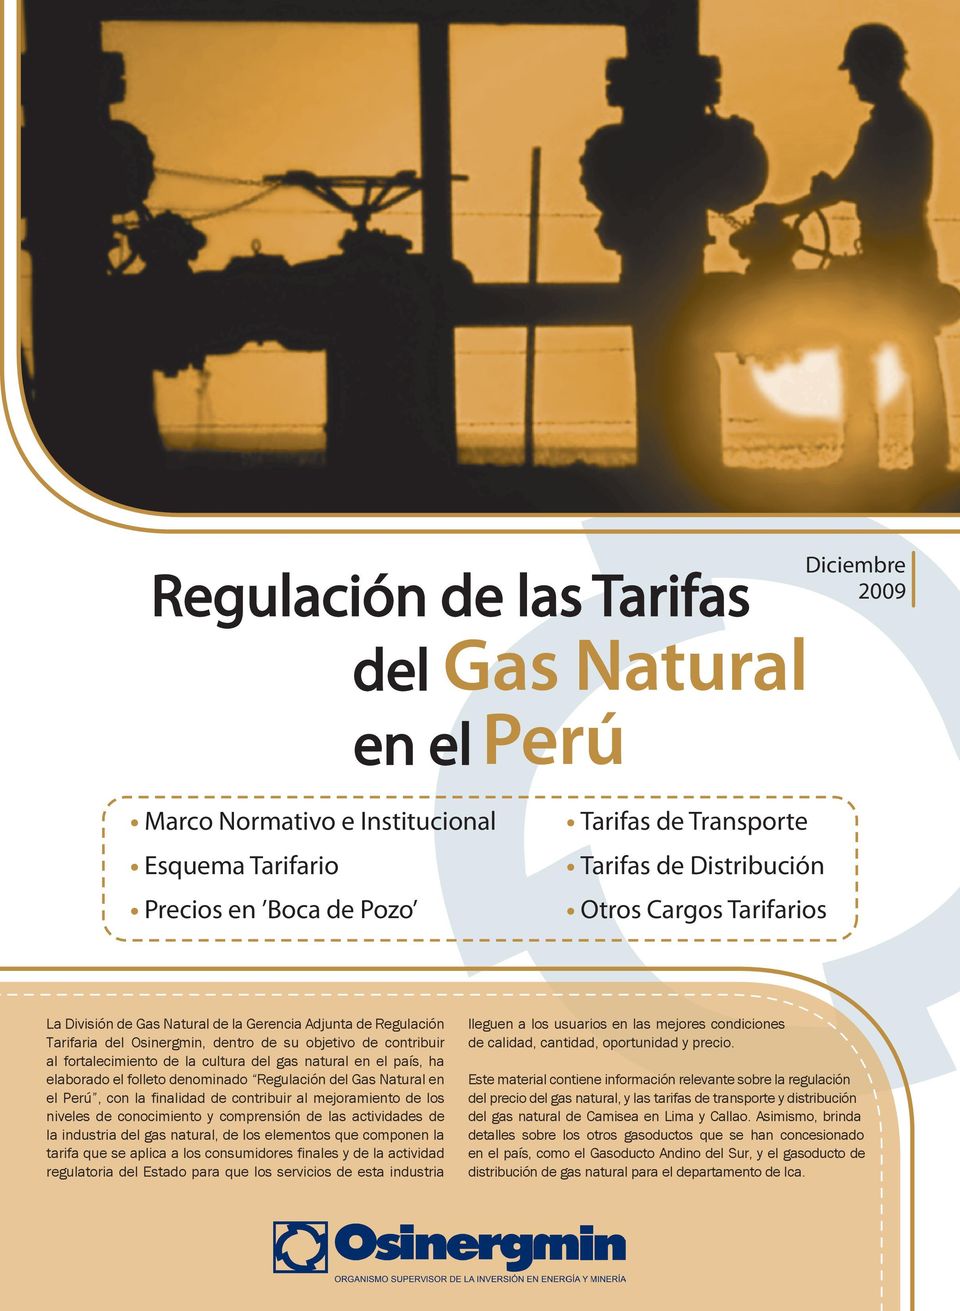 en el país, ha elaborado el folleto denominado Regulación del Gas Natural en el Perú, con la finalidad de contribuir al mejoramiento de los niveles de conocimiento y comprensión de las actividades de